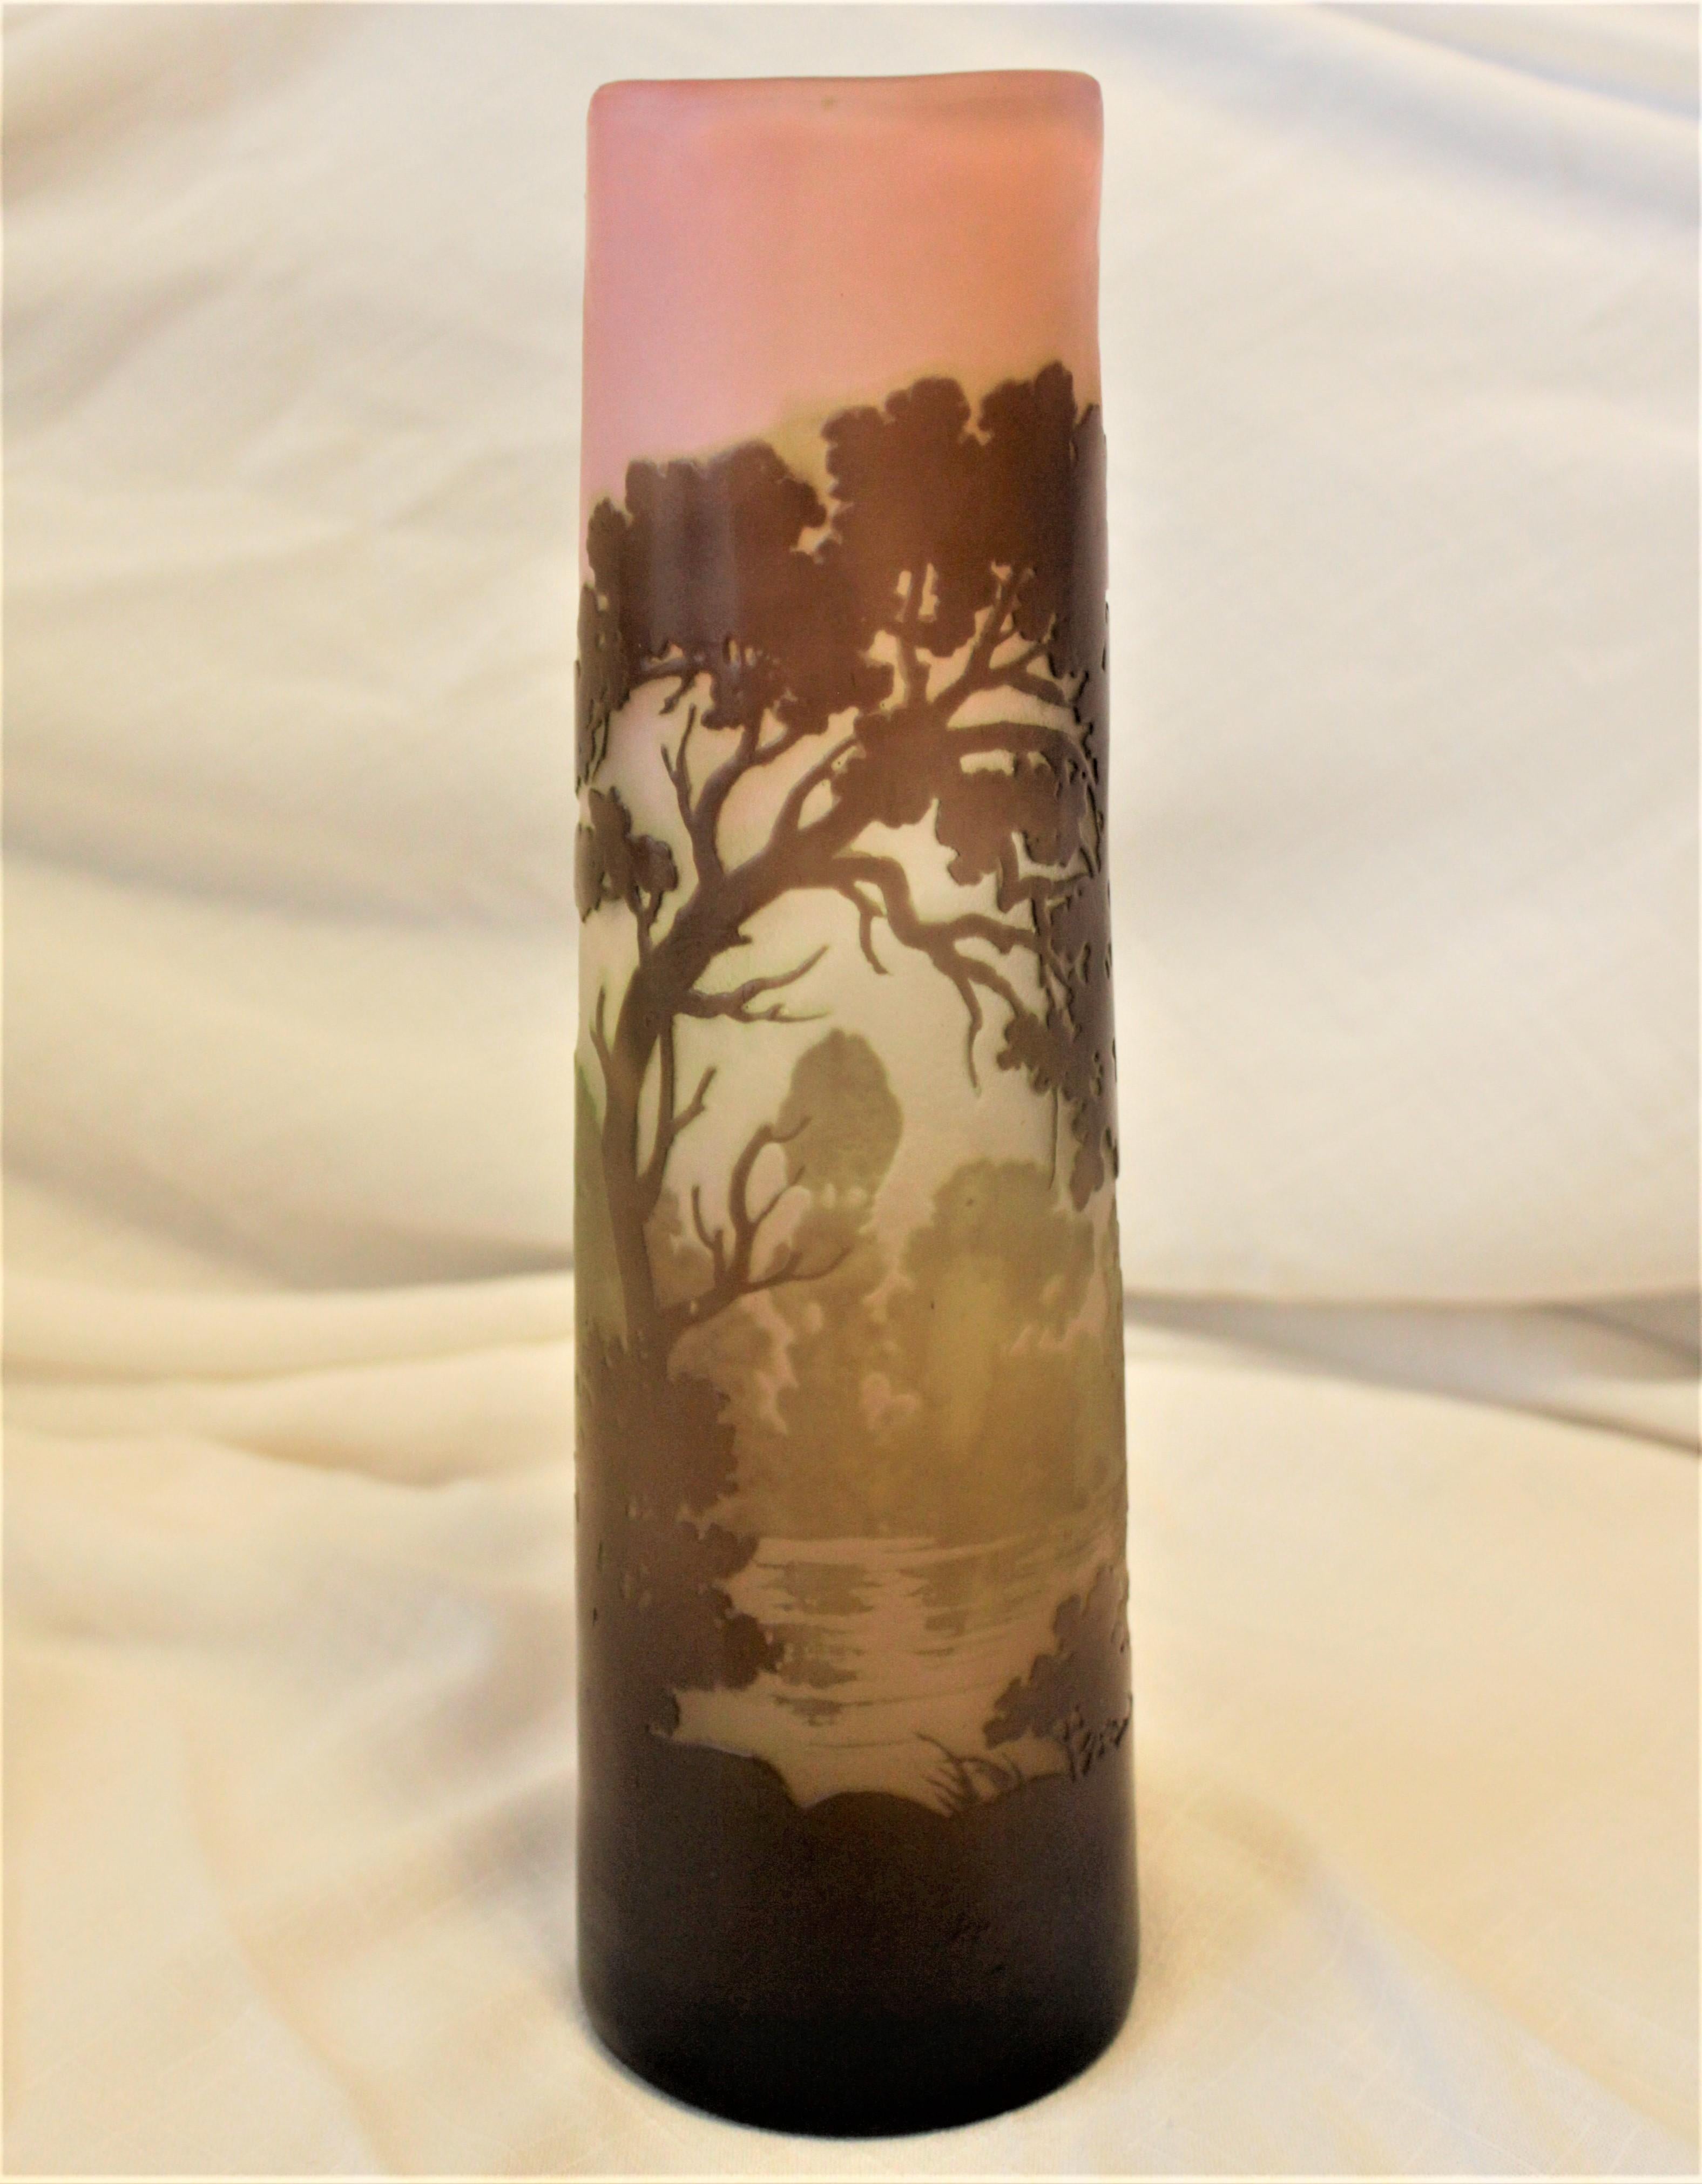 Diese antike signierte Vase von Galle wurde um 1900 in Frankreich im Jugendstil hergestellt. Die Vase besteht aus mehreren Schichten farbigen Glases, das geätzt, geschliffen und poliert wurde, um eine ländliche Landschaft mit einem Bach im